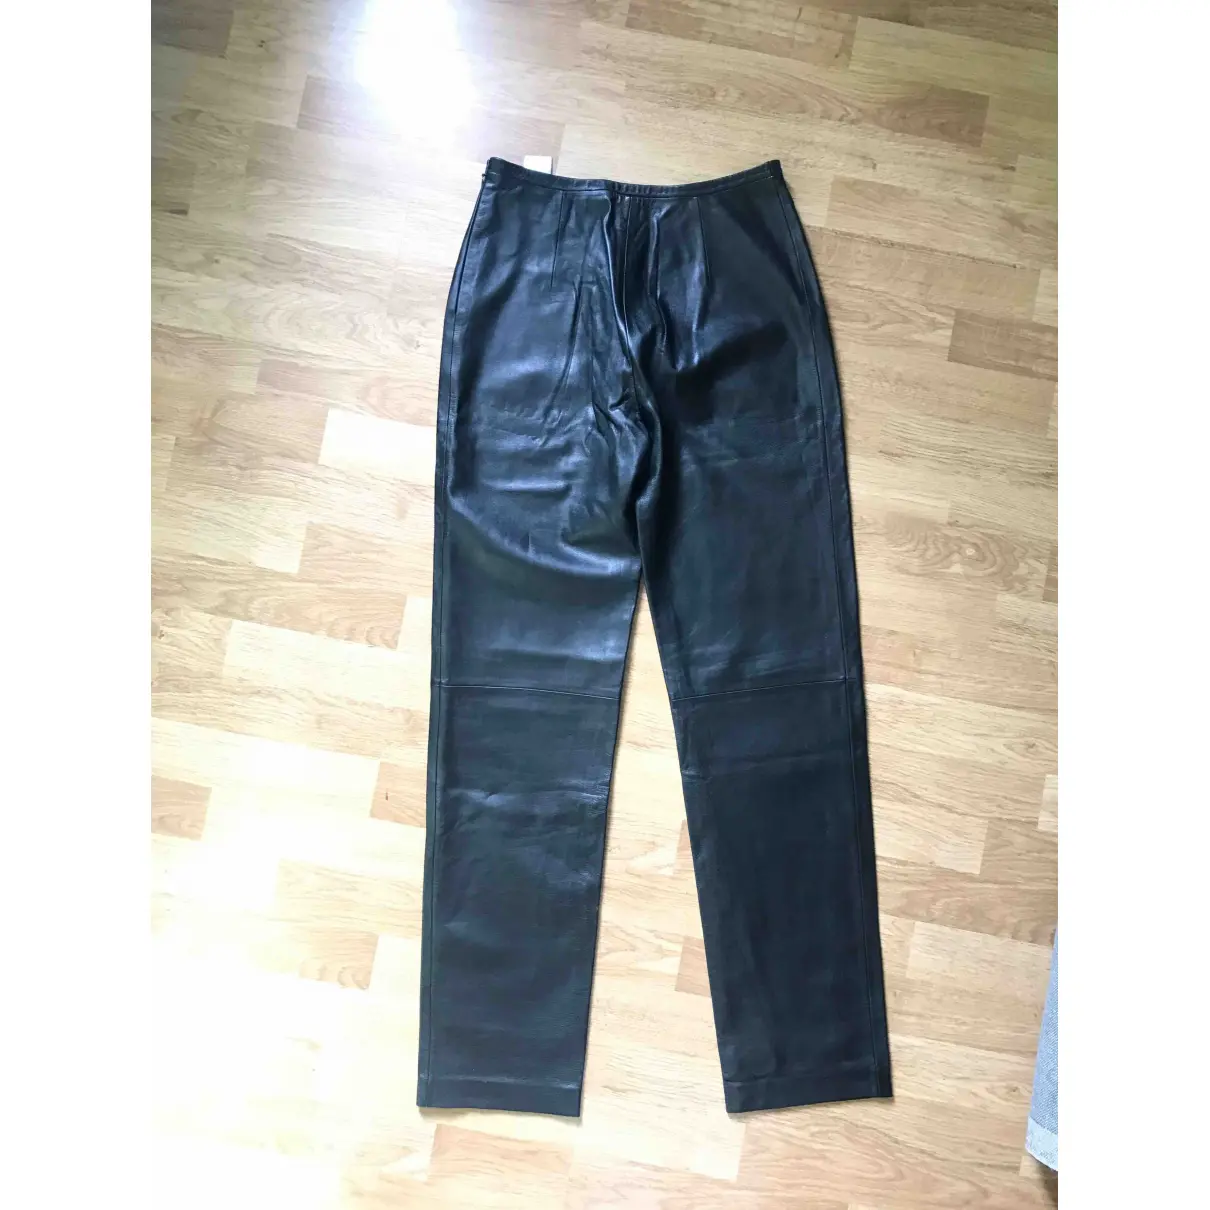 Buy Loewe Leather trousers online